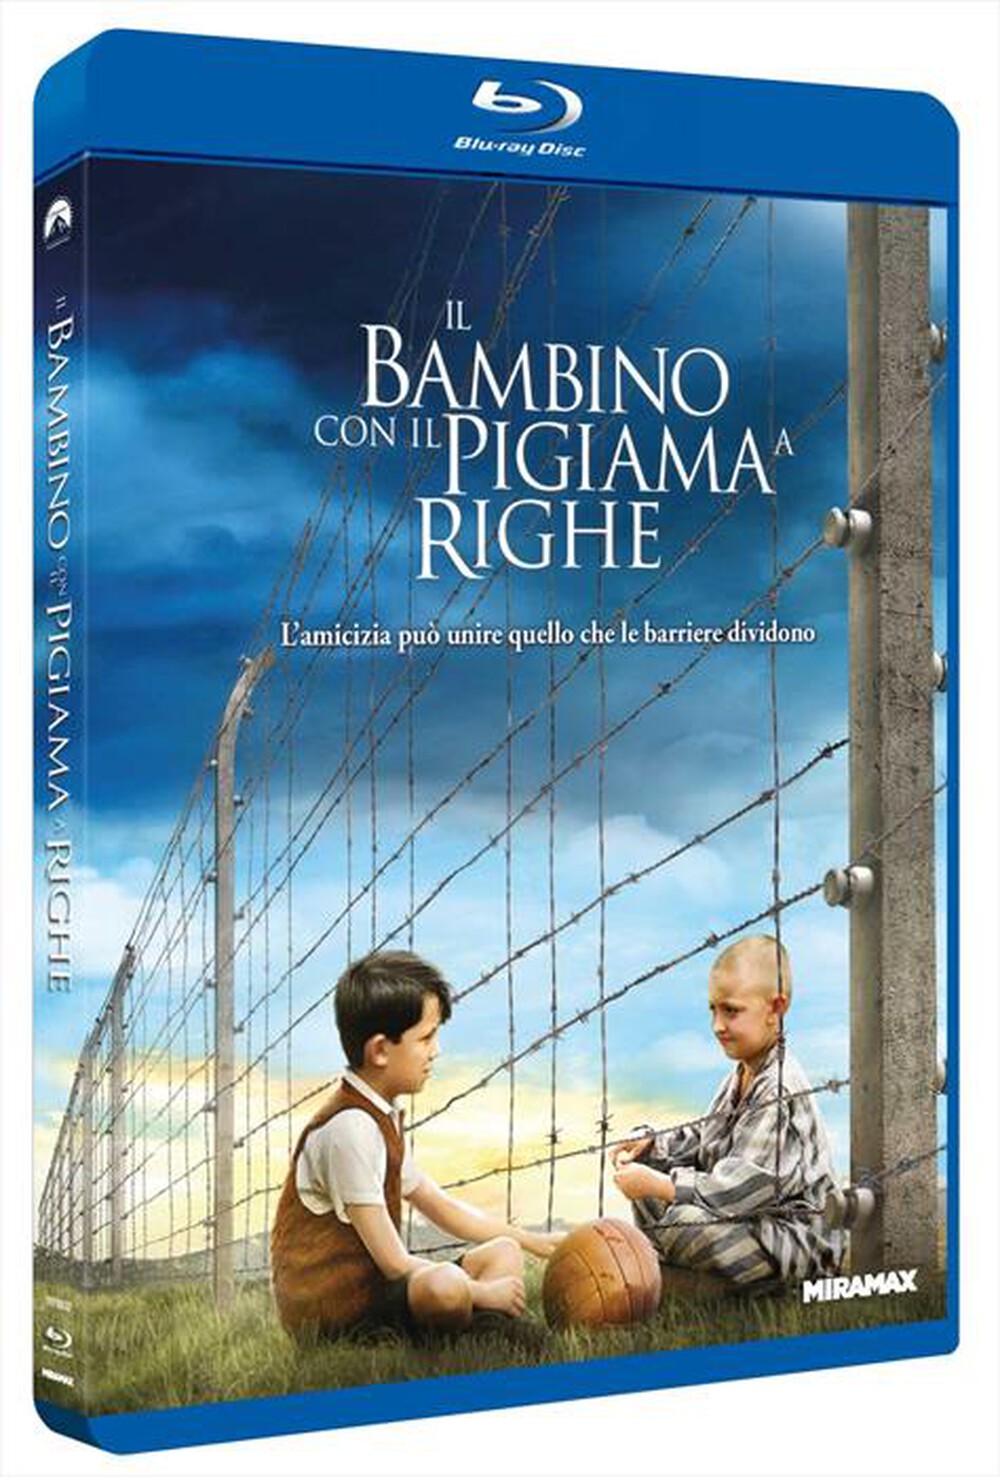 "Paramount Pictures - Bambino Con Il Pigiama A Righe (Il)"